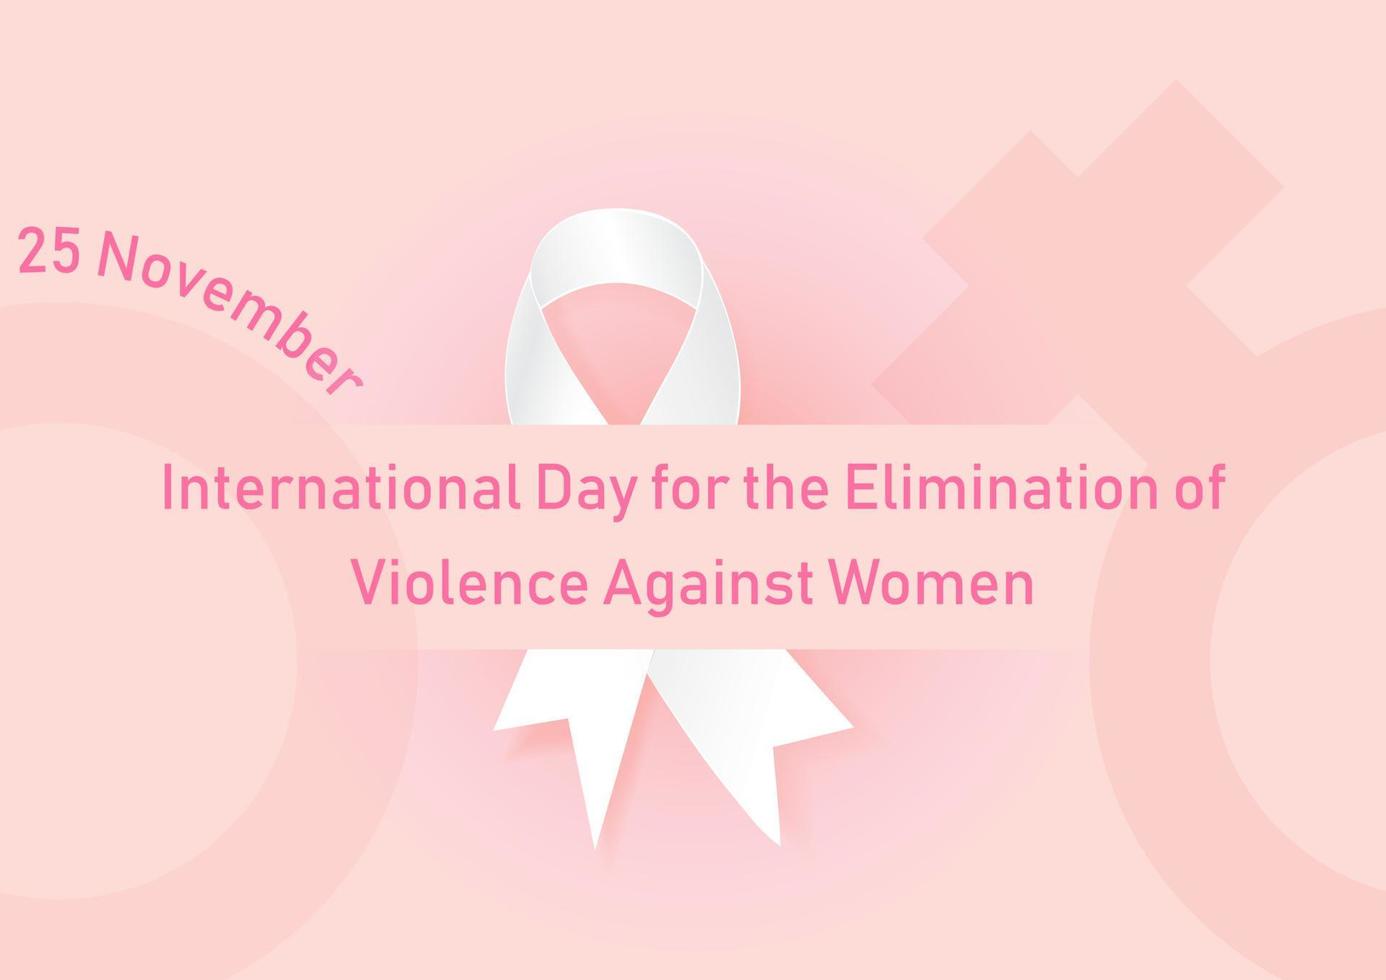 de dag och namn av eliminering våld mot kvinnor lydelse på vit band och kvinna symbol och rosa bakgrund. Allt i vektor design.